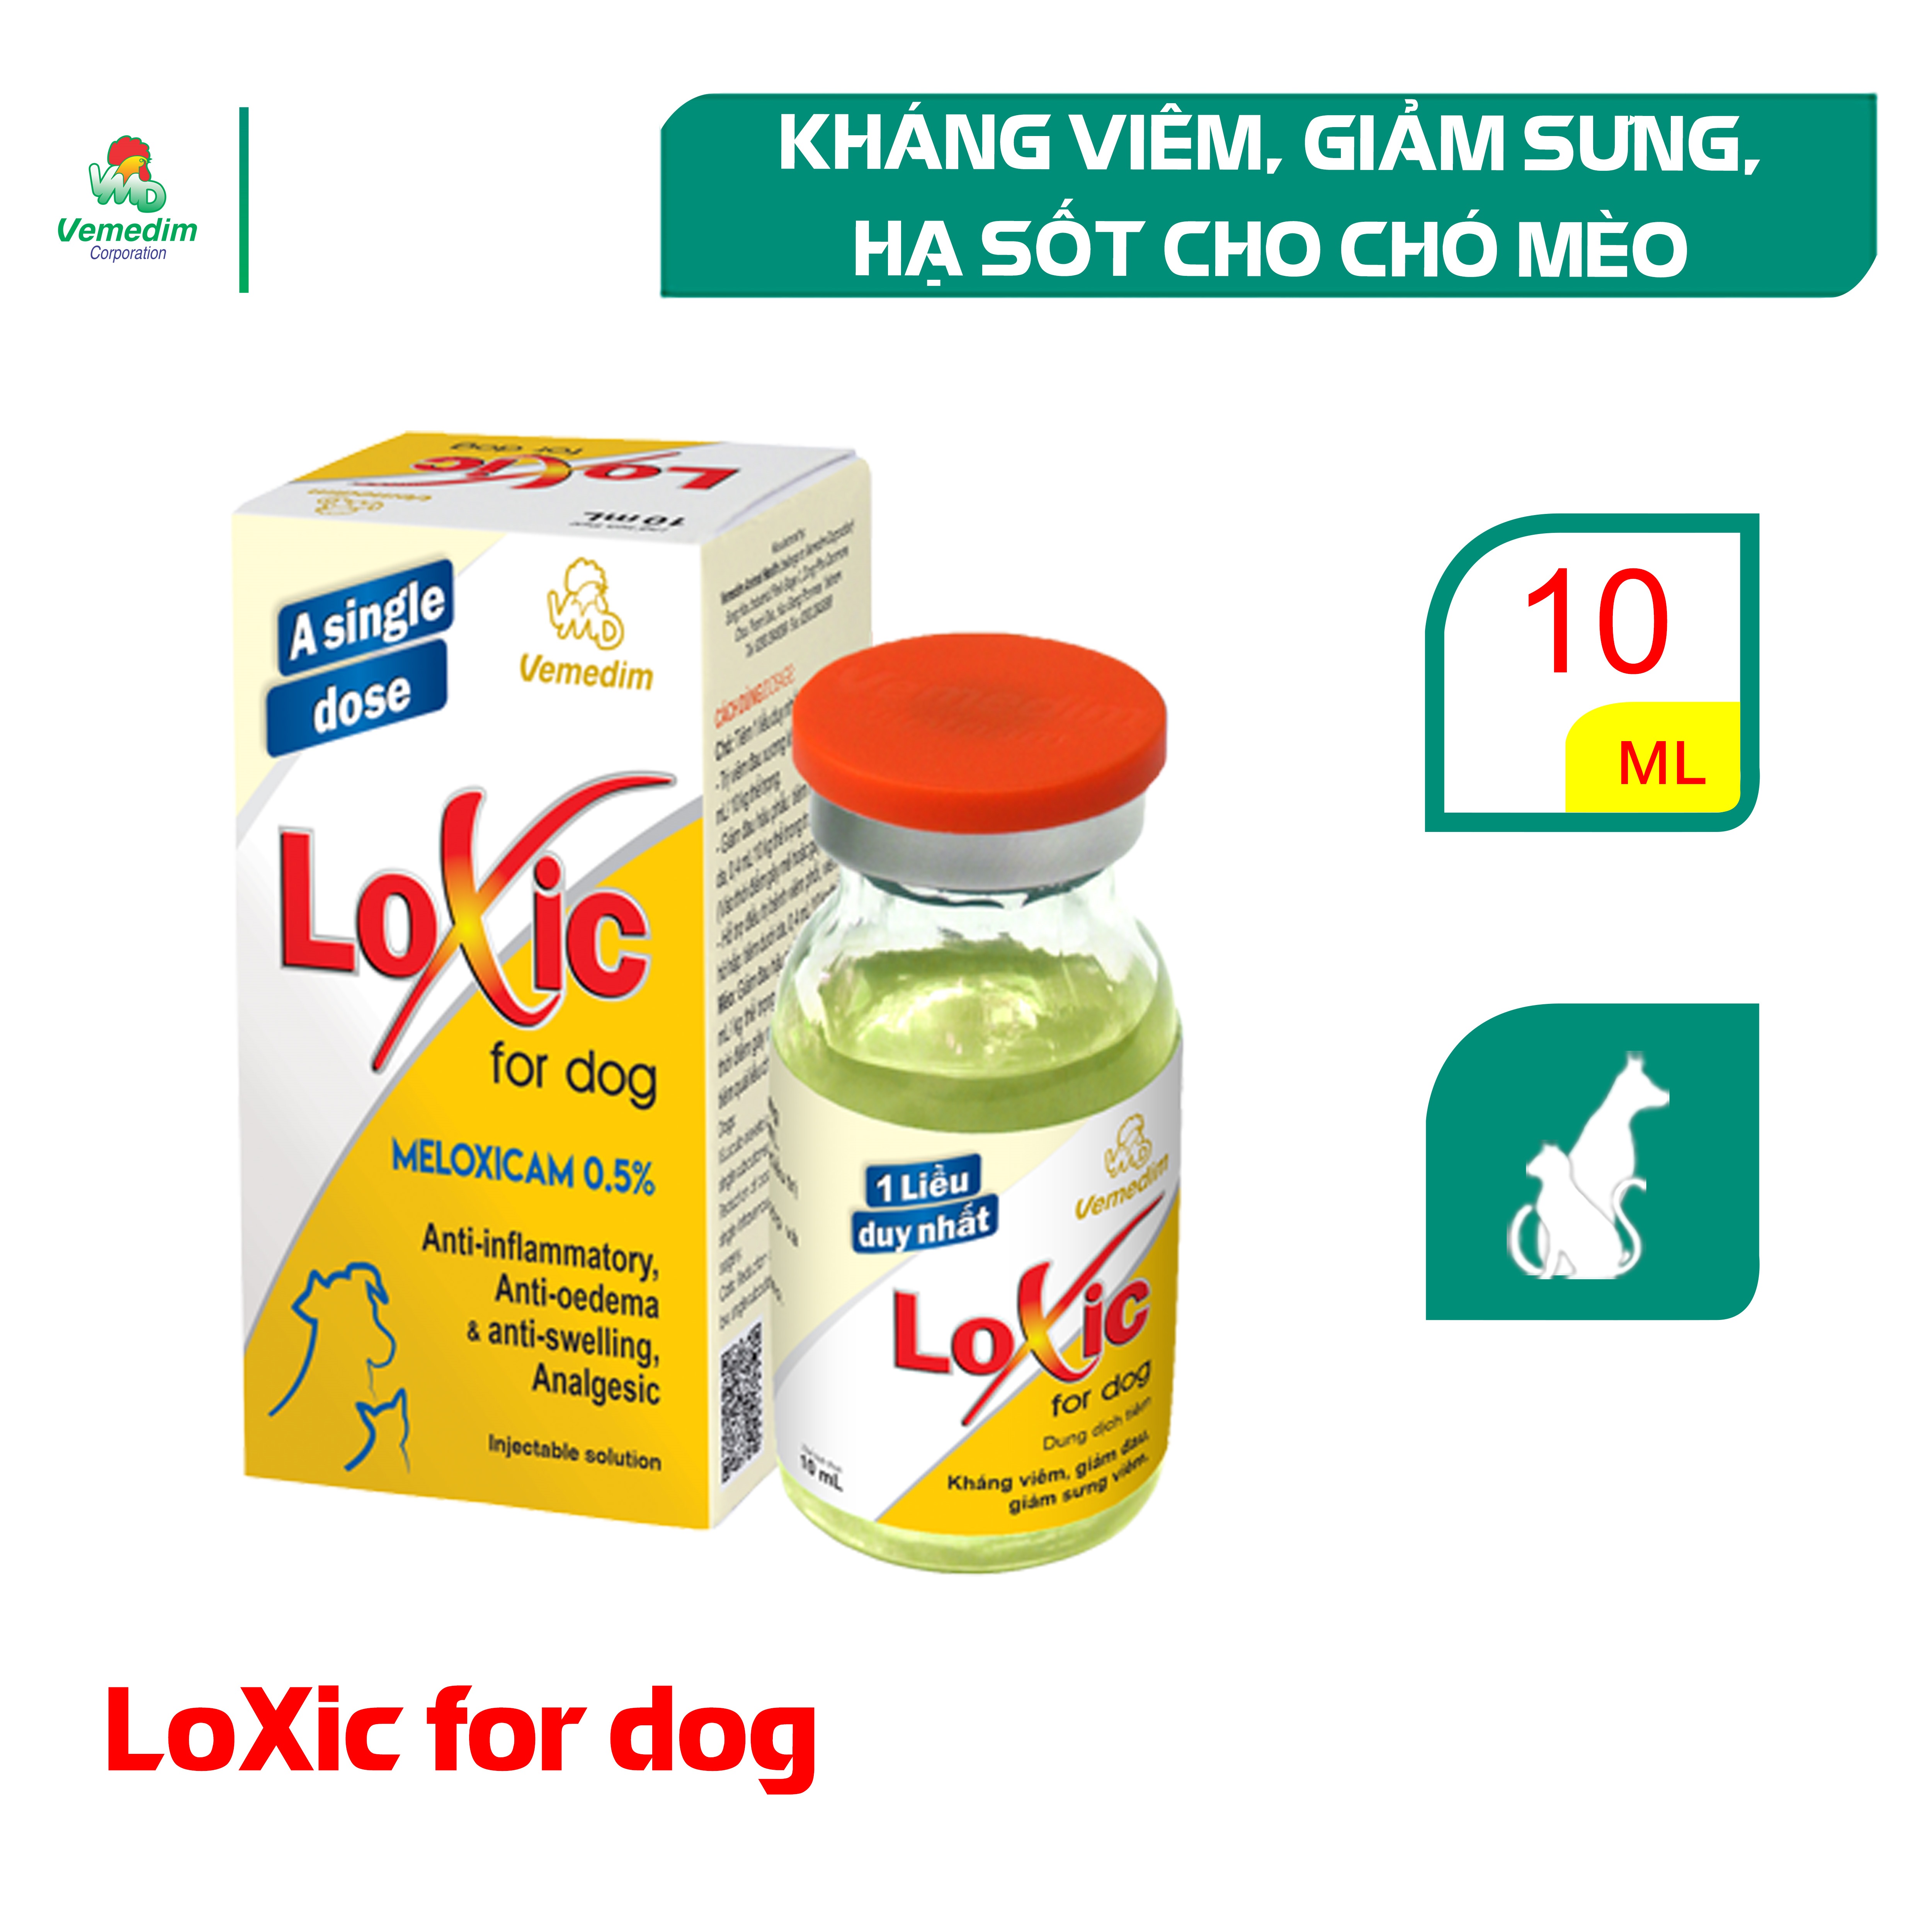 Vemedim Loxic for dog thuốc tiêm giảm sưng viêm, kháng viêm, giảm đau, tiêm 1 liều duy nhất, chai 10ml